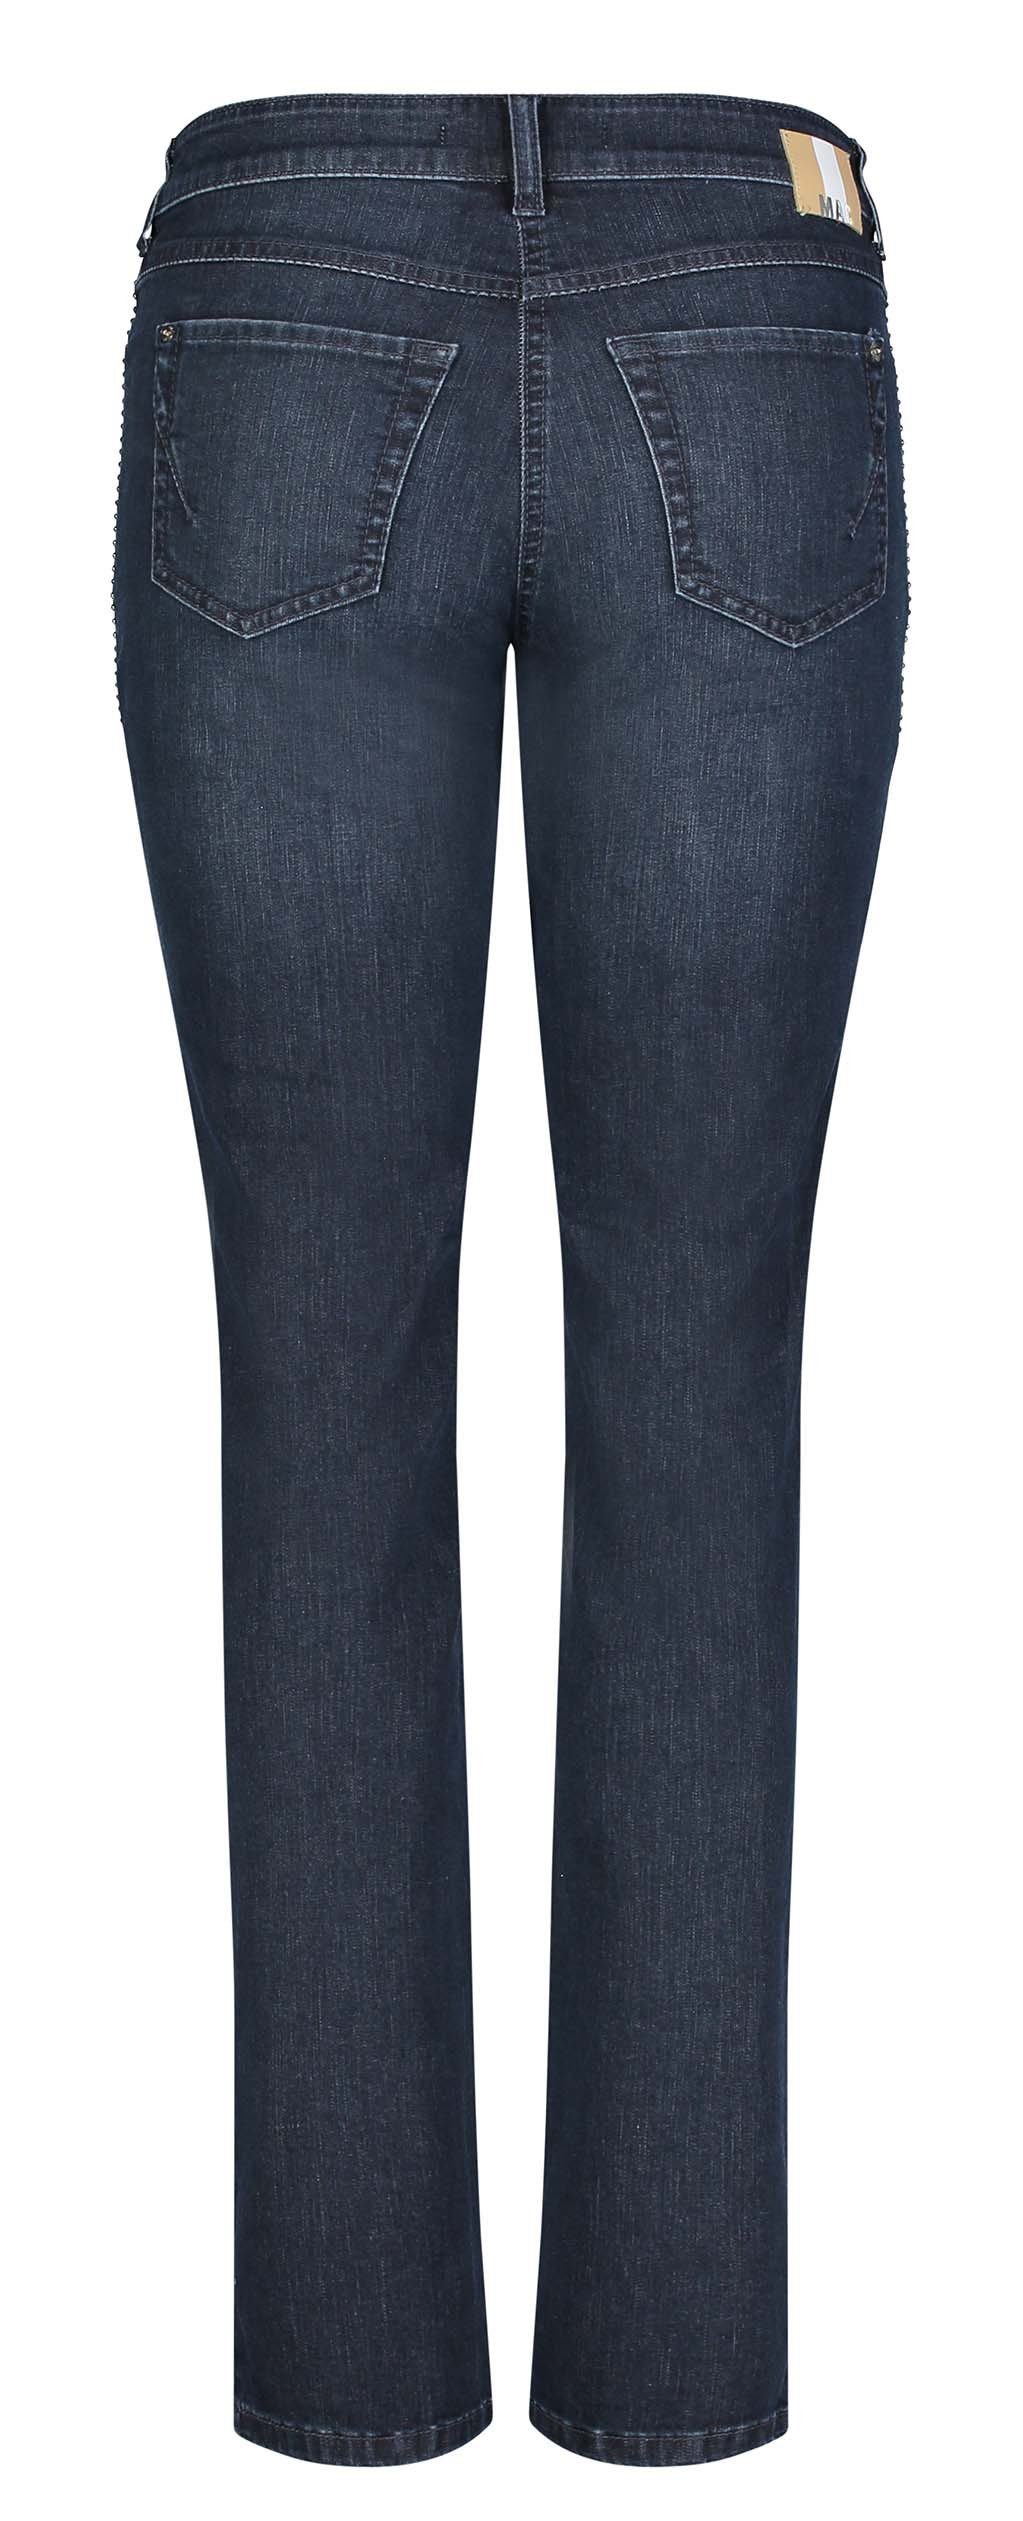 Damen Jeans MAC Stretch-Jeans MAC ANGELA dark blue authentic wash 5268-95-0380L